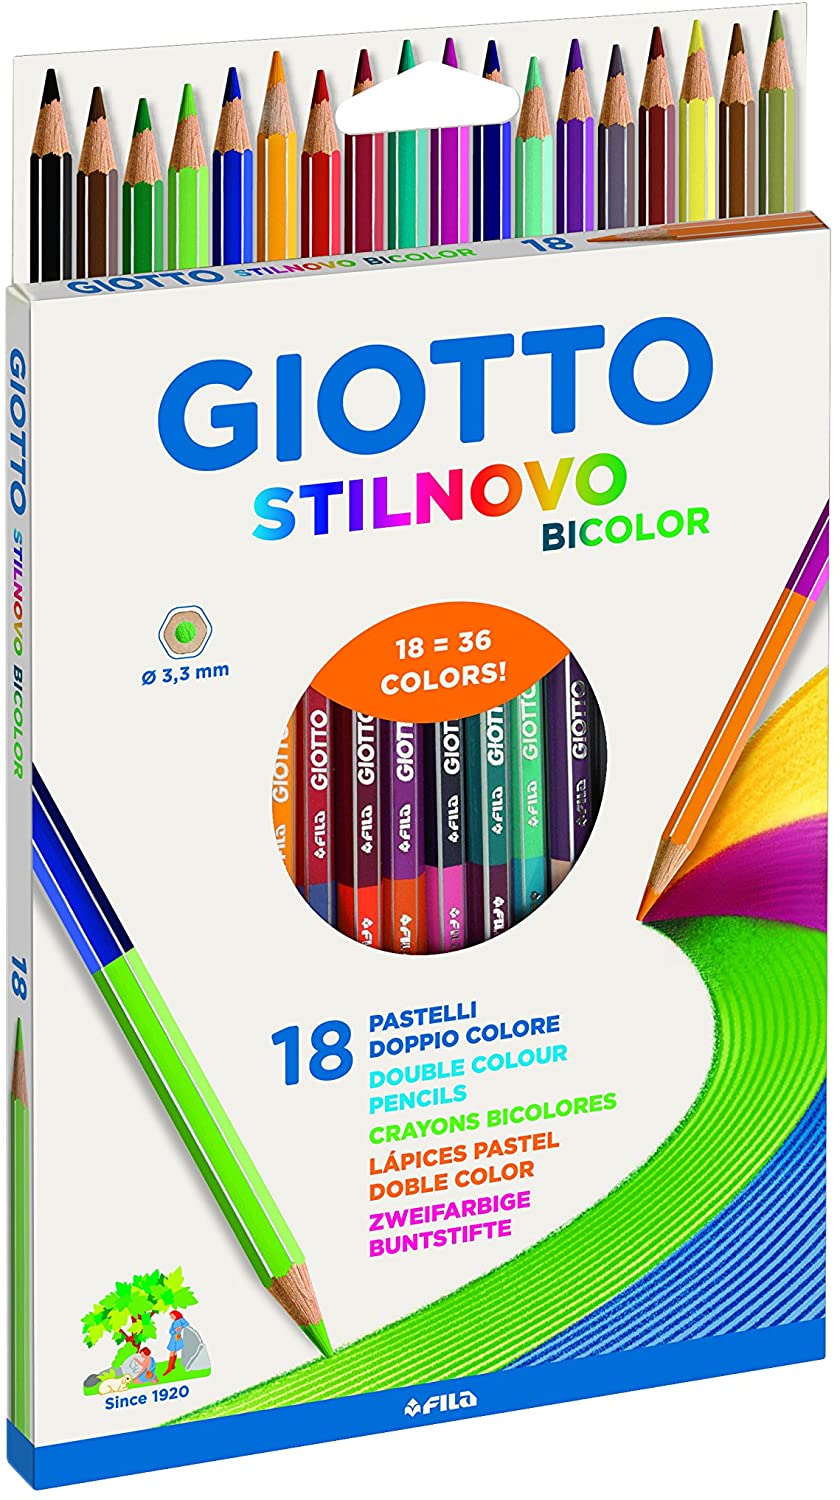 Giotto 18 Pastelli Stilnovo 278200